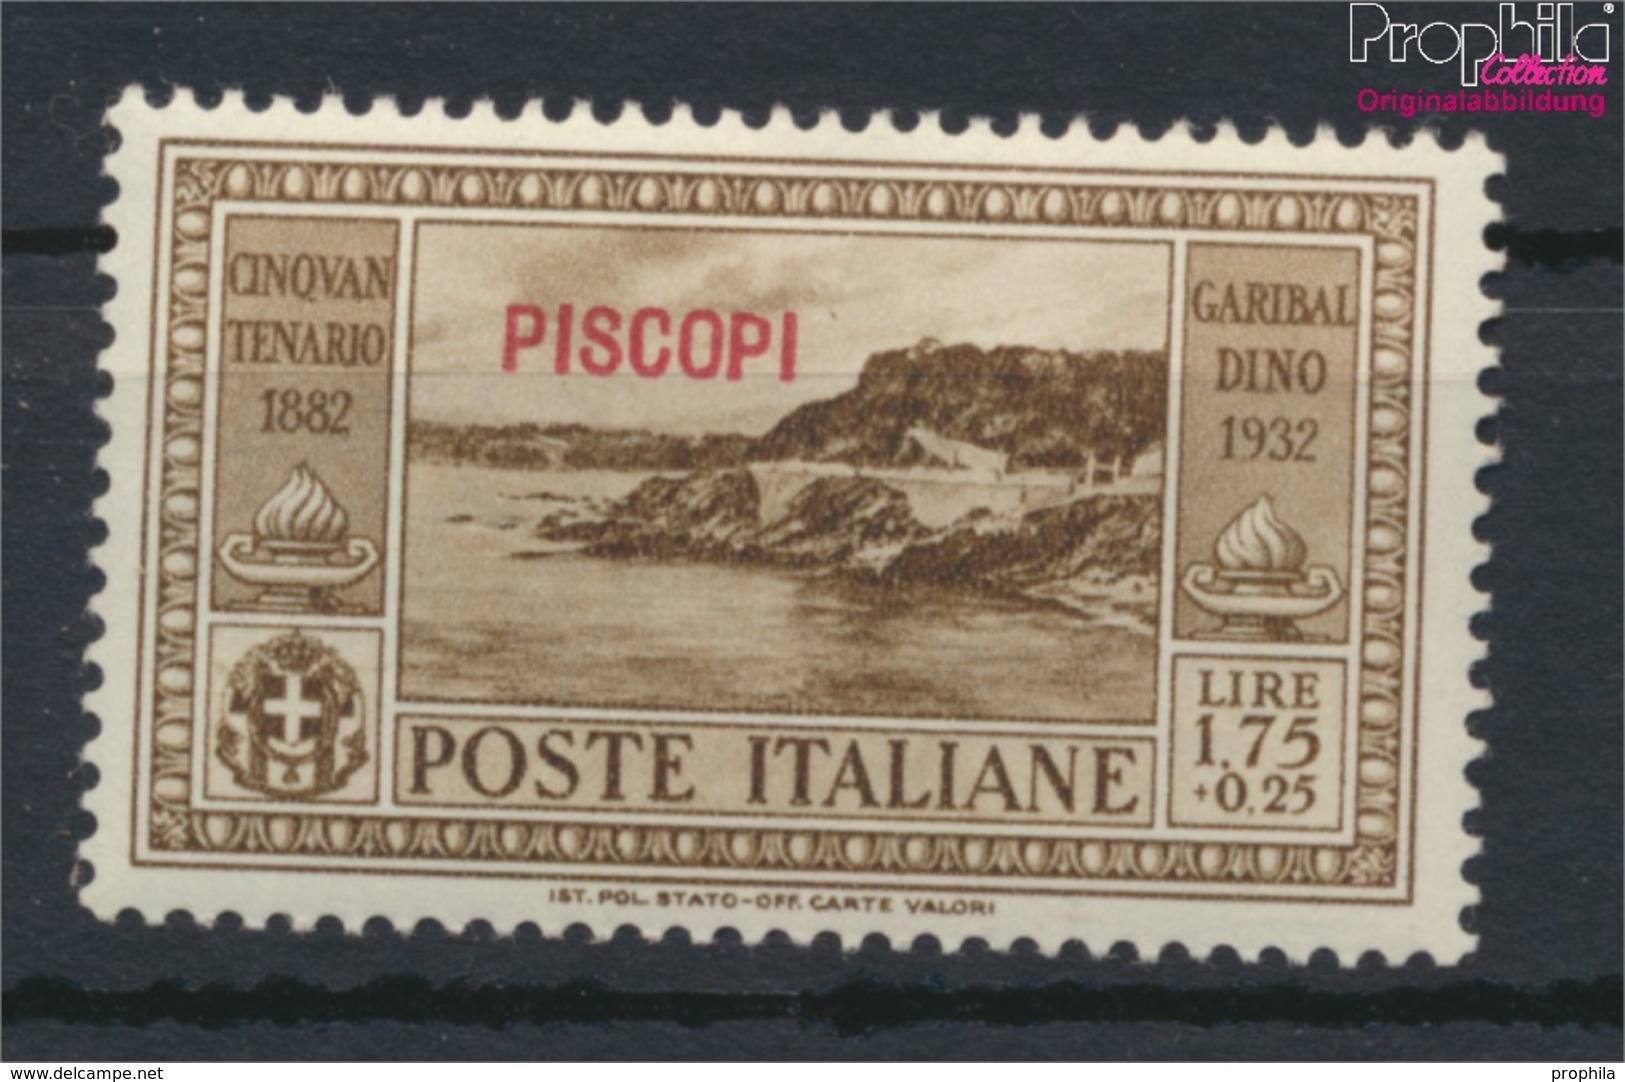 Ägäische Inseln 95IX Postfrisch 1932 Garibaldi Aufdruckausgabe Piscopi (9421778 - Ägäis (Piscopi)